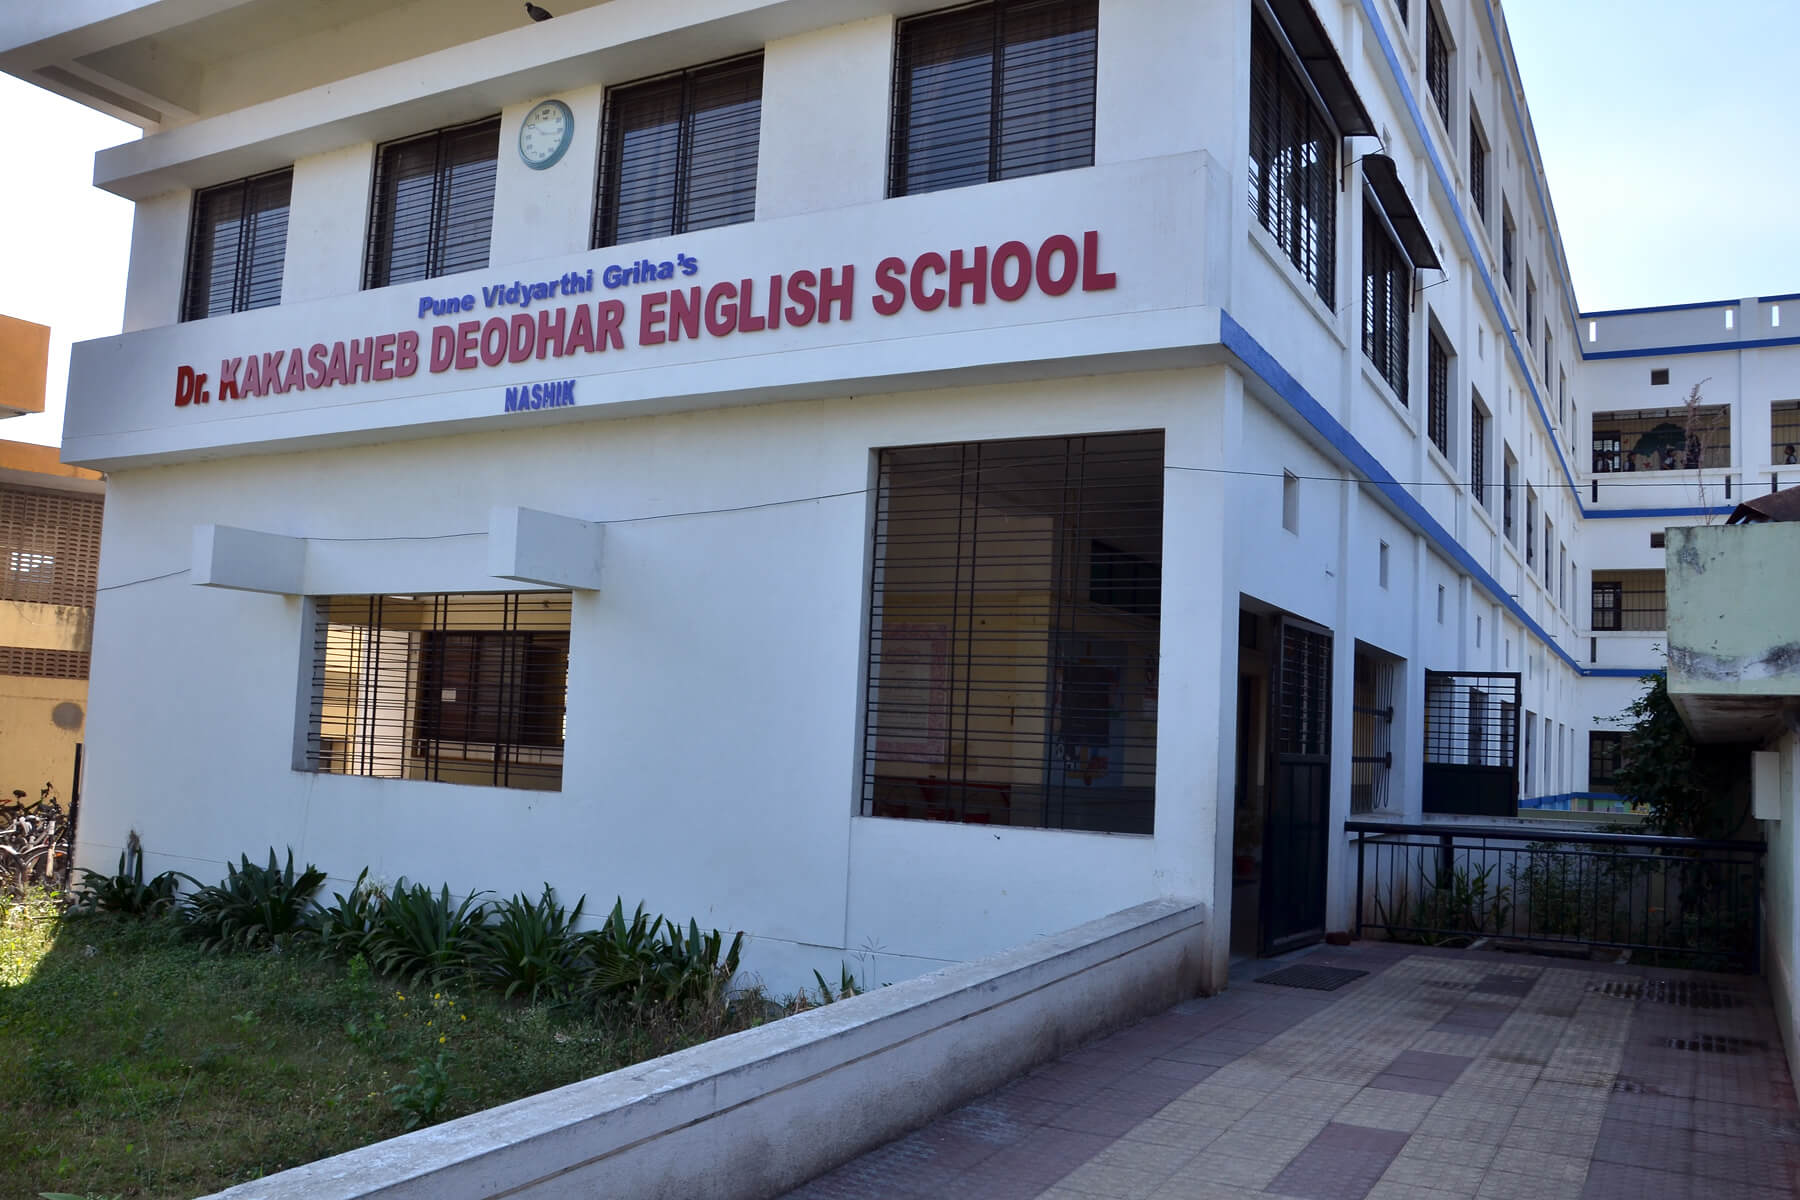 Dr. Kakasaheb Deodhar English School